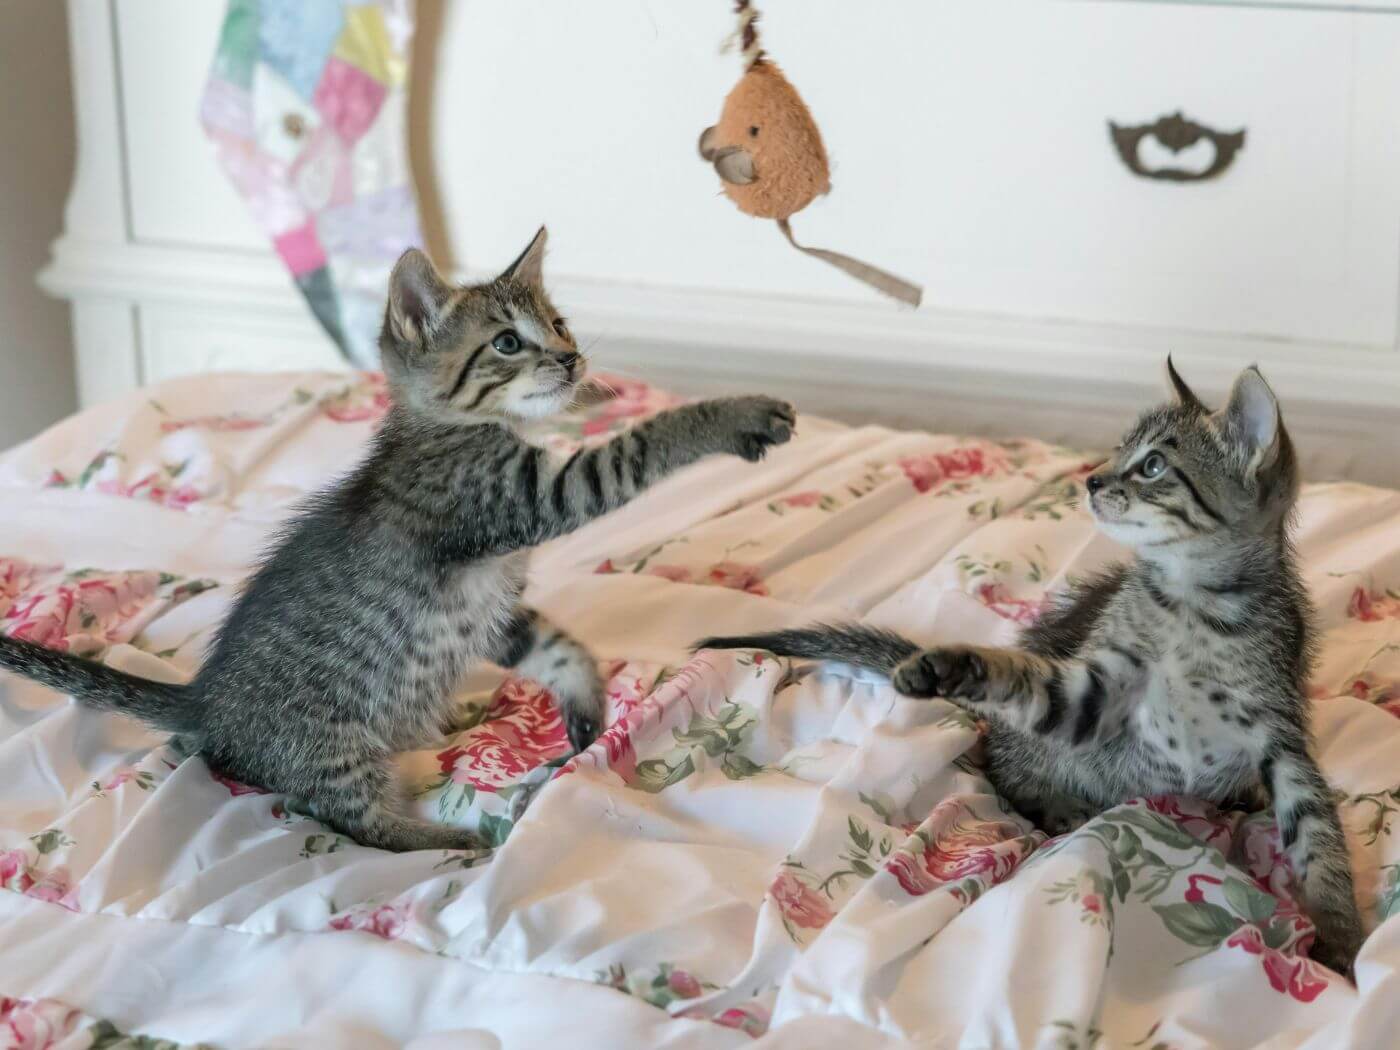 Kitten spielen auf einem Bett mit einem Spielzeug Maus